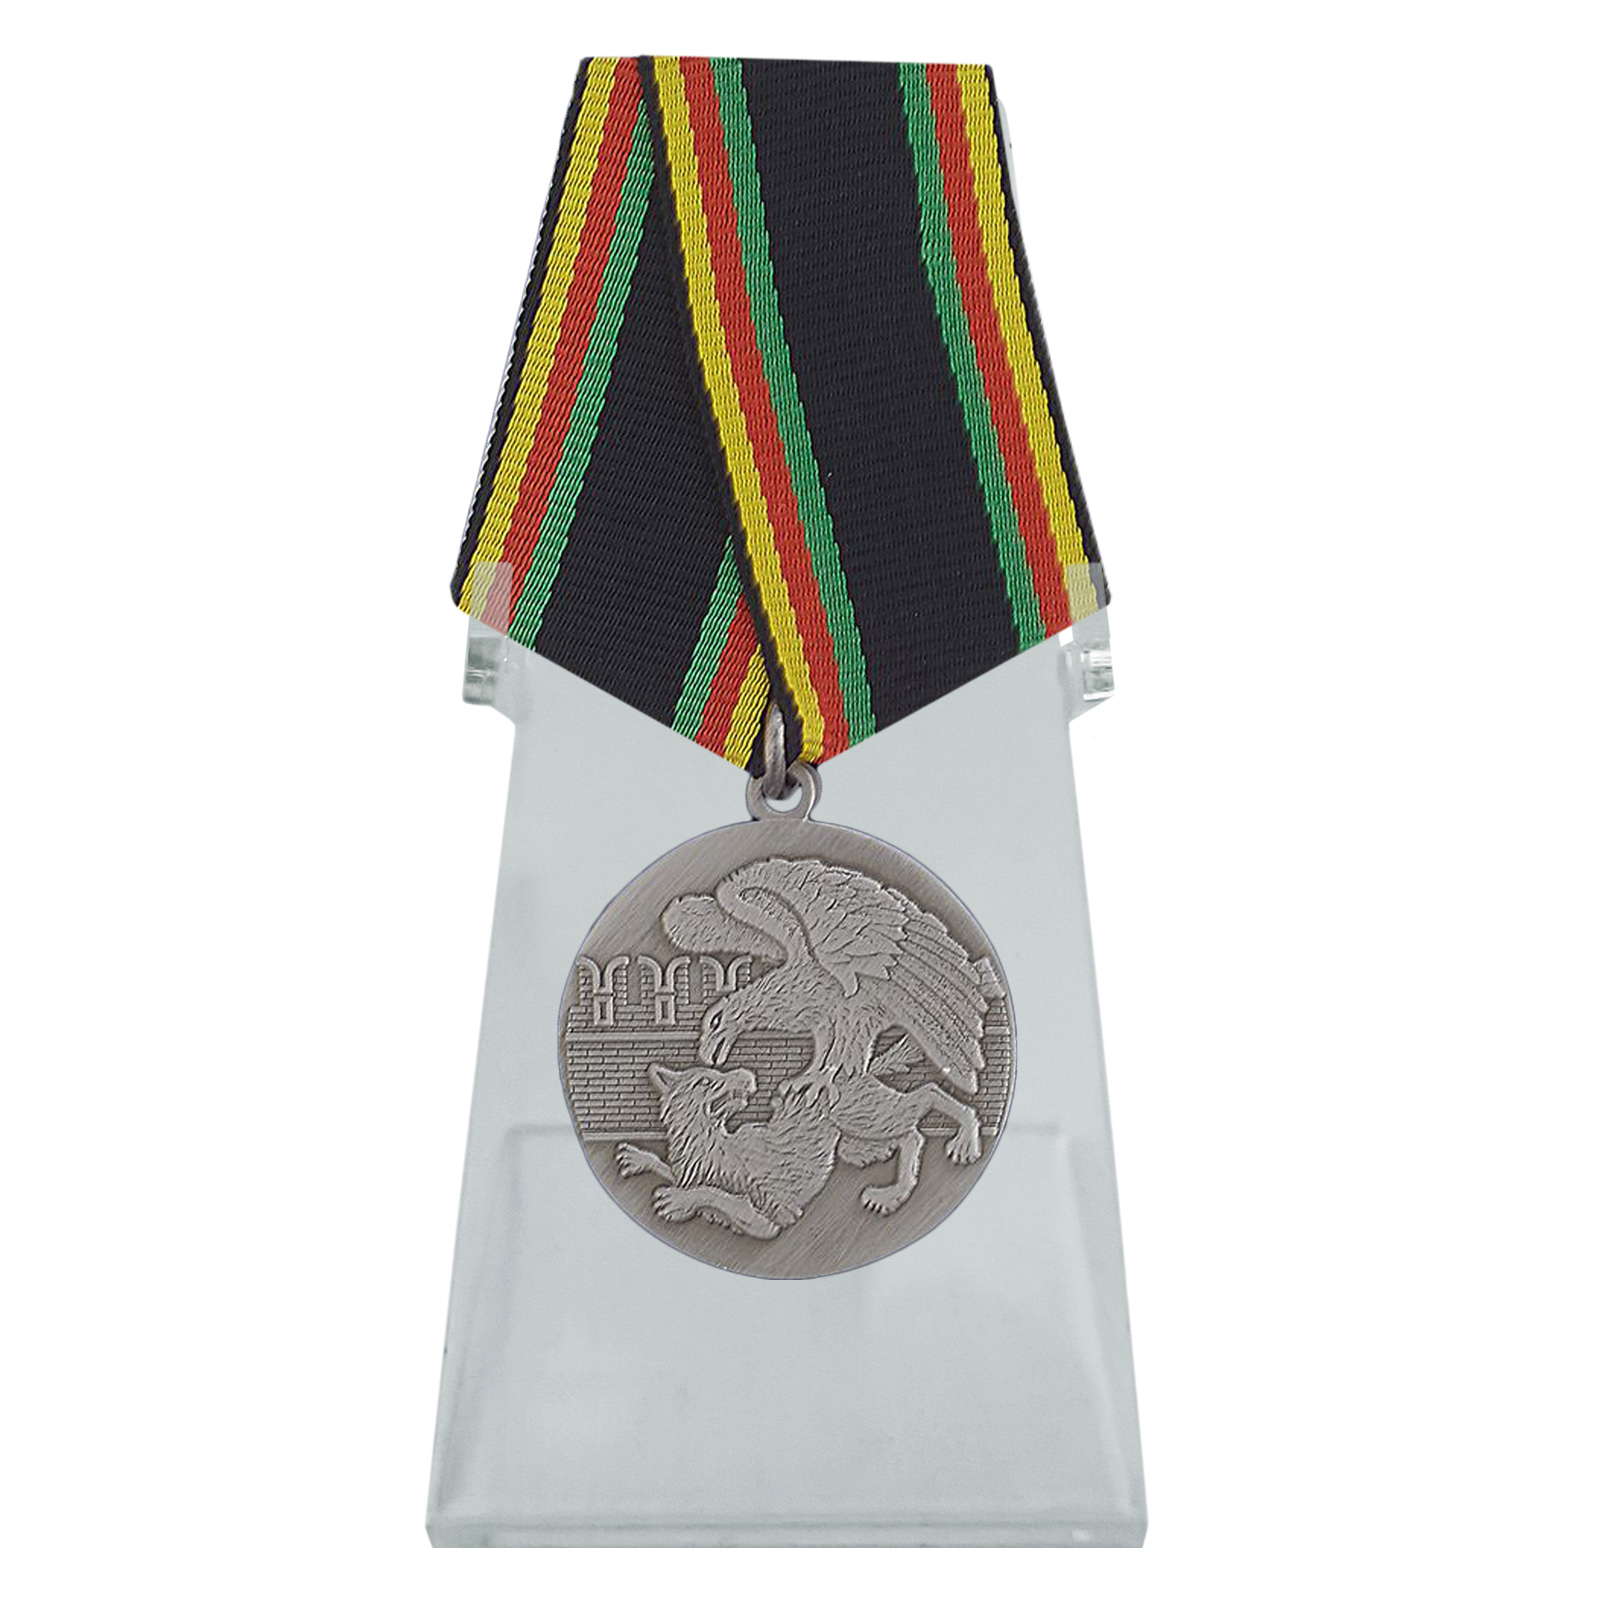 Медаль "Защитнику Отечества" на подставке